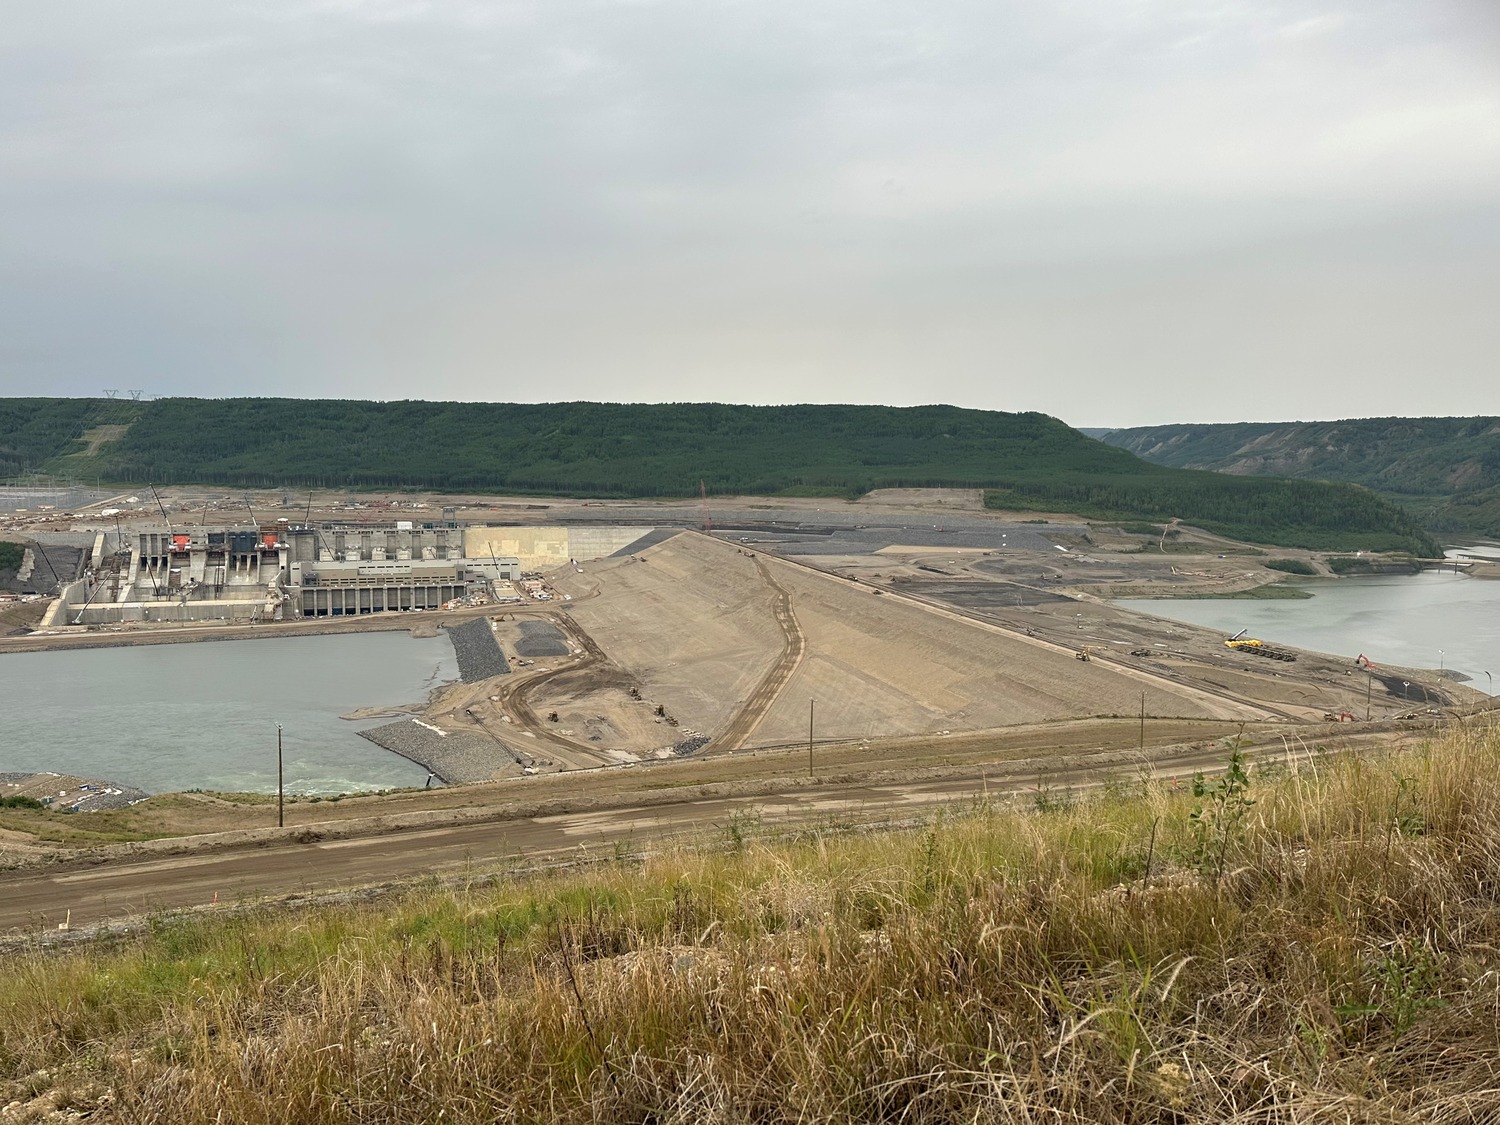 Site C Earthfill Dam